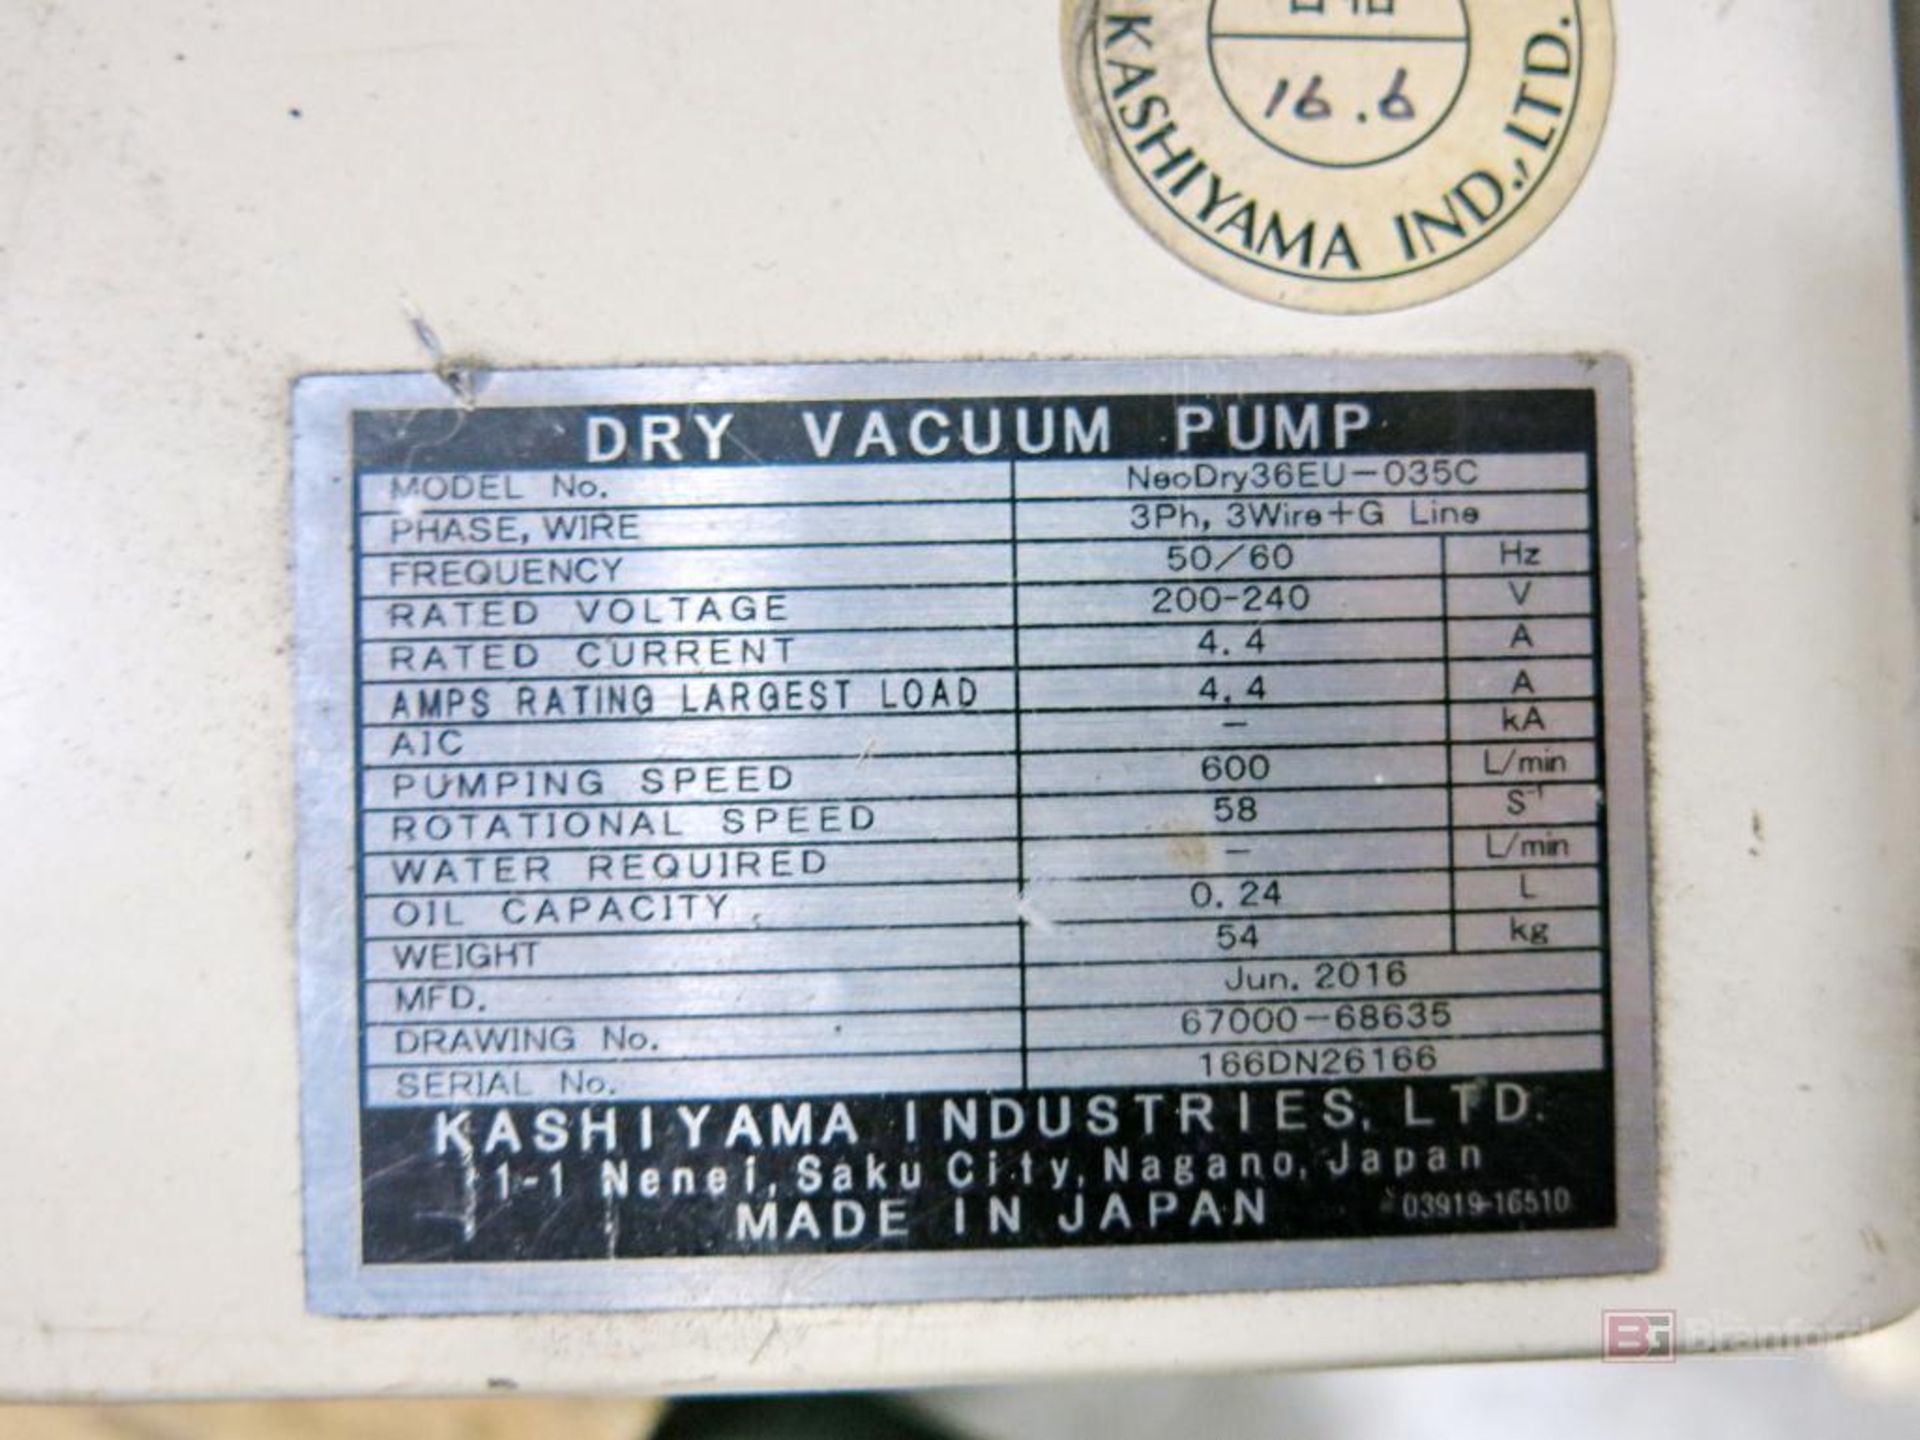 Kashiyama Neodry 36E Dry Vacuum Pump - Image 3 of 3